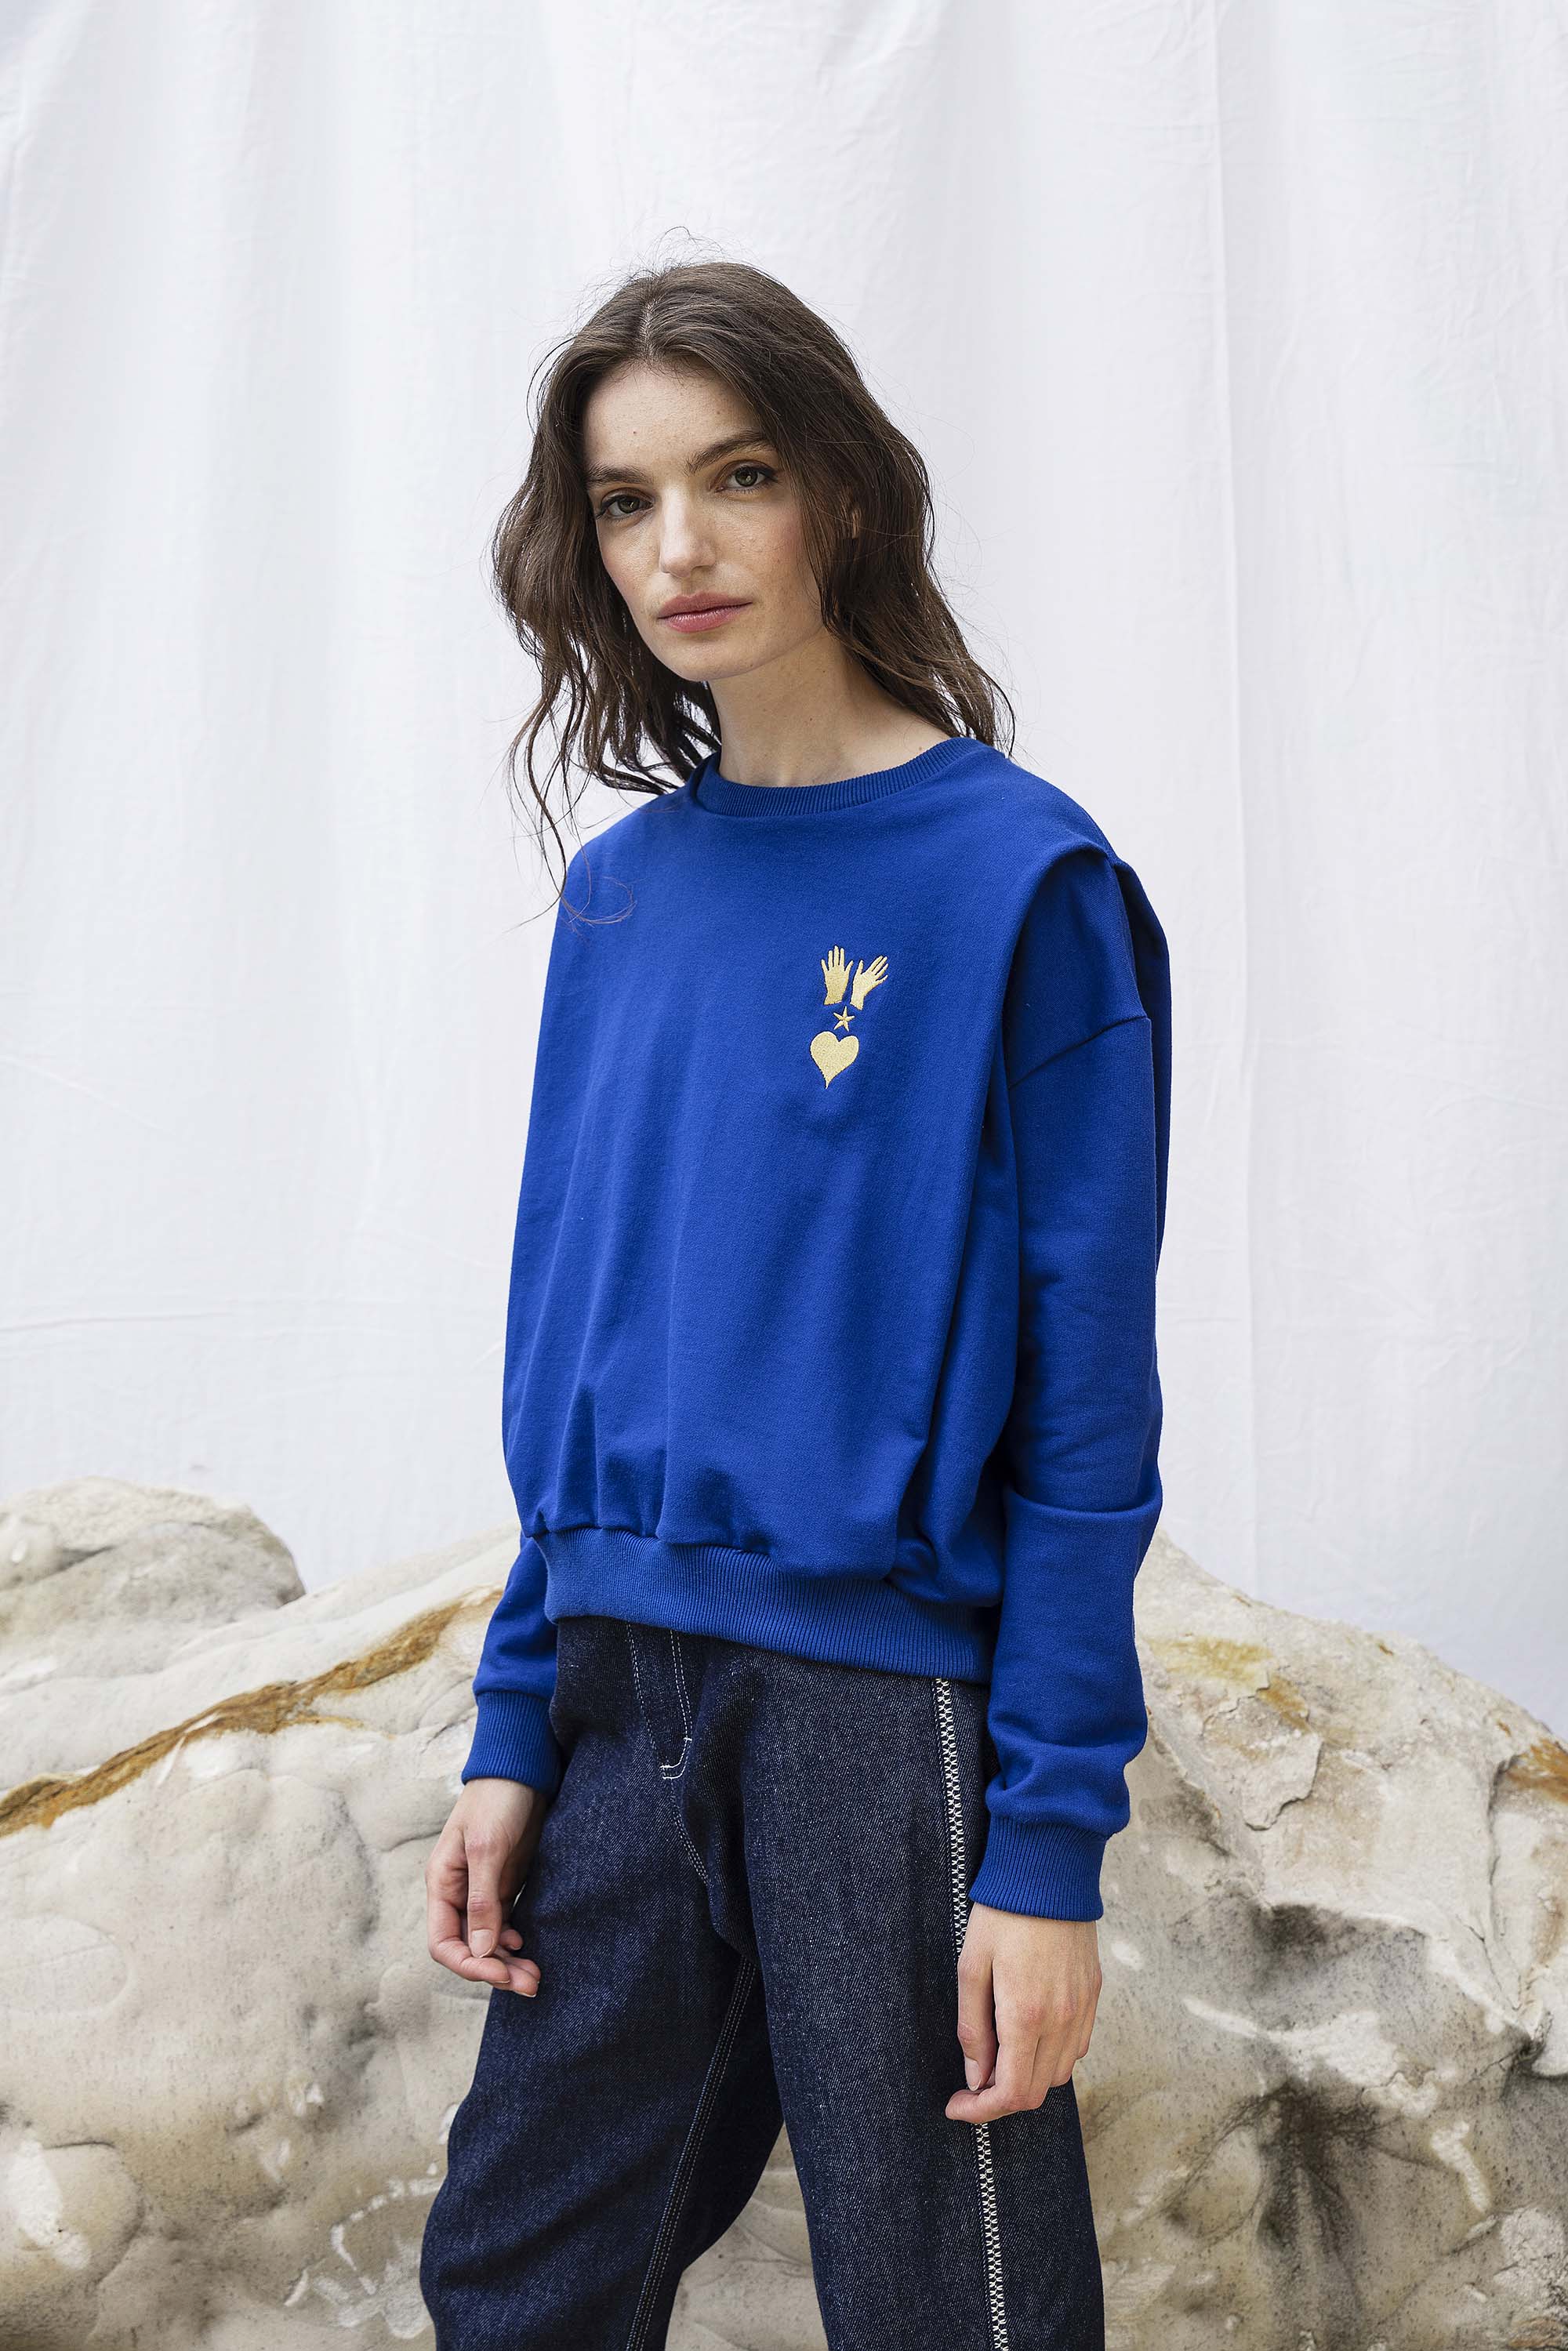 Sweatshirt Alyssa Manos Bleu Saphir doux et confortable, cintré, oversize, zippé ou à capuche